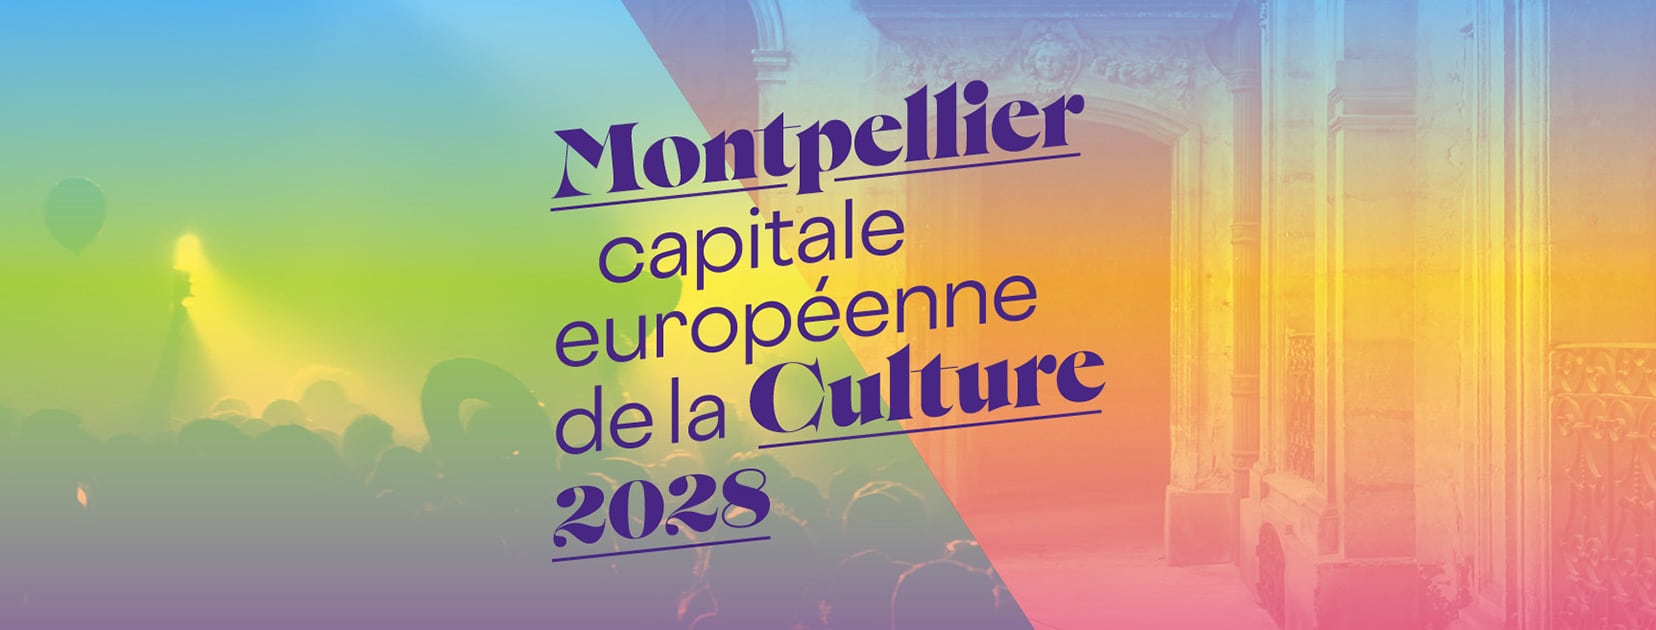 Lunel aux côtés de Montpellier pour devenir capitale européenne de la Culture